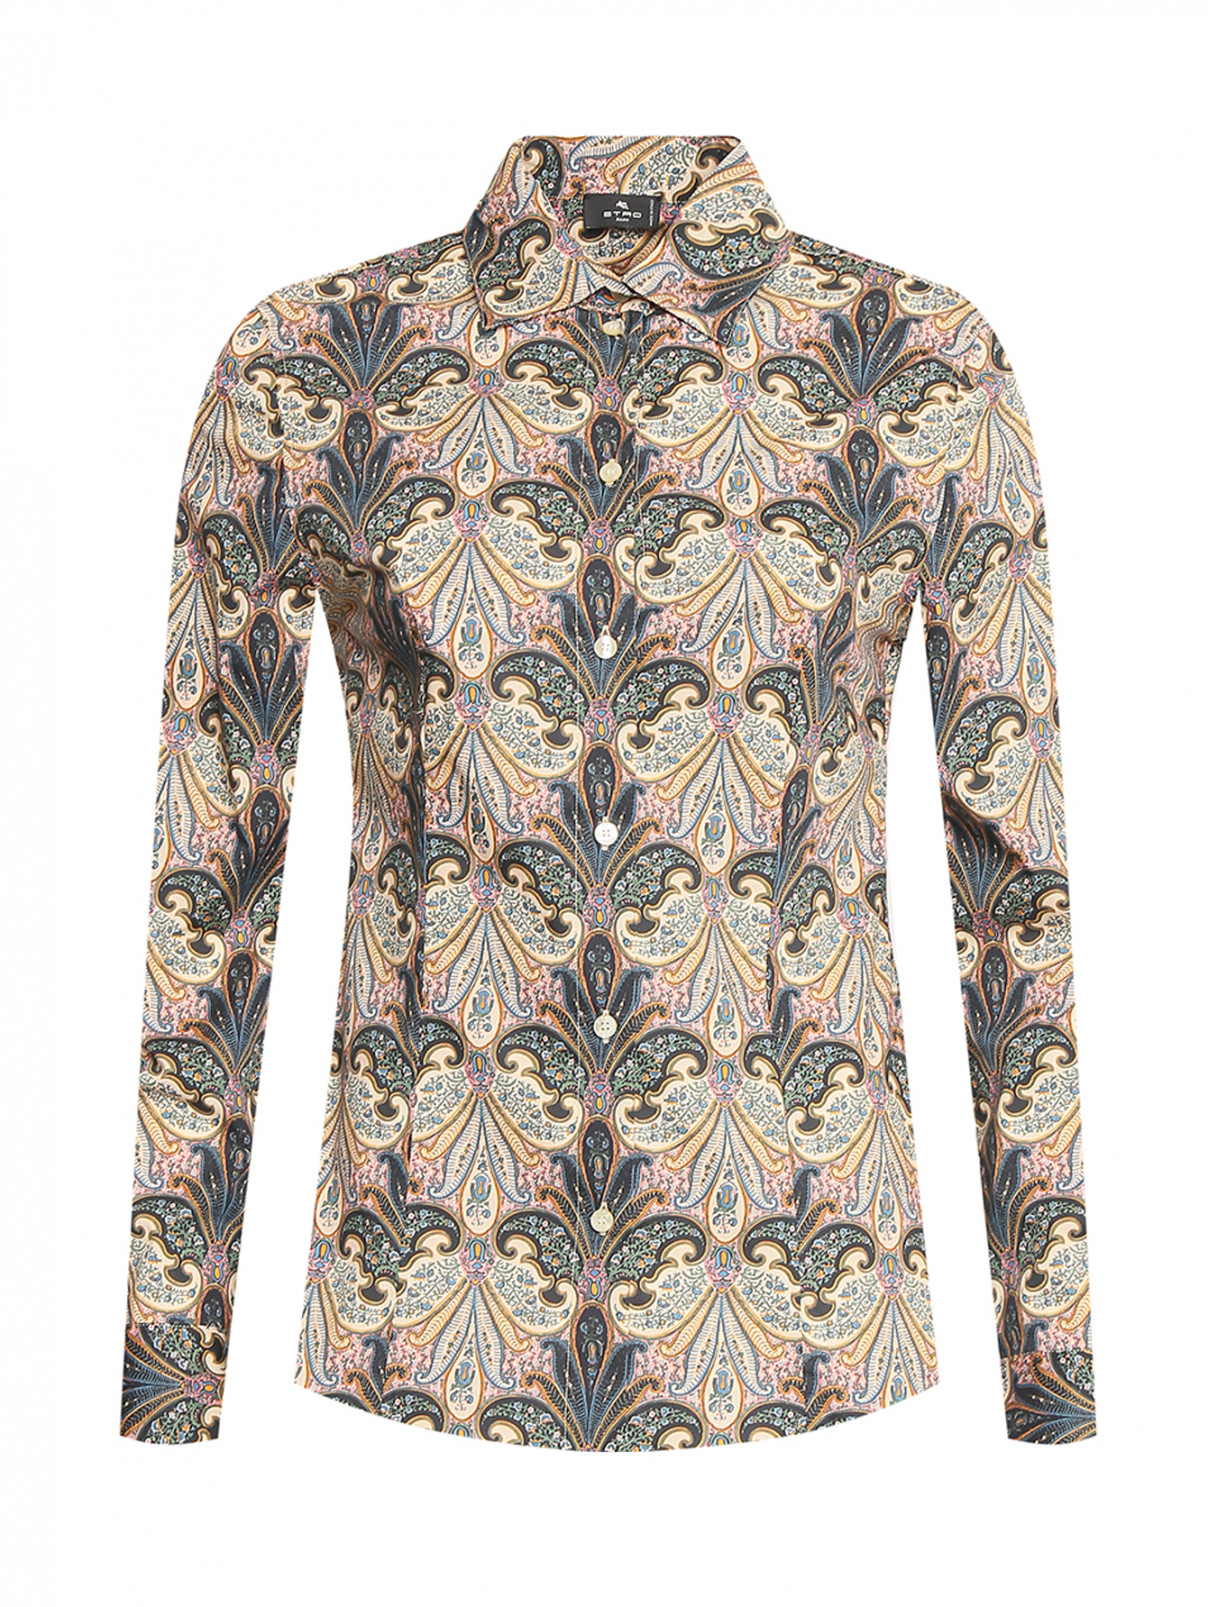 Блуза из хлопка с узором Etro  –  Общий вид  – Цвет:  Мультиколор